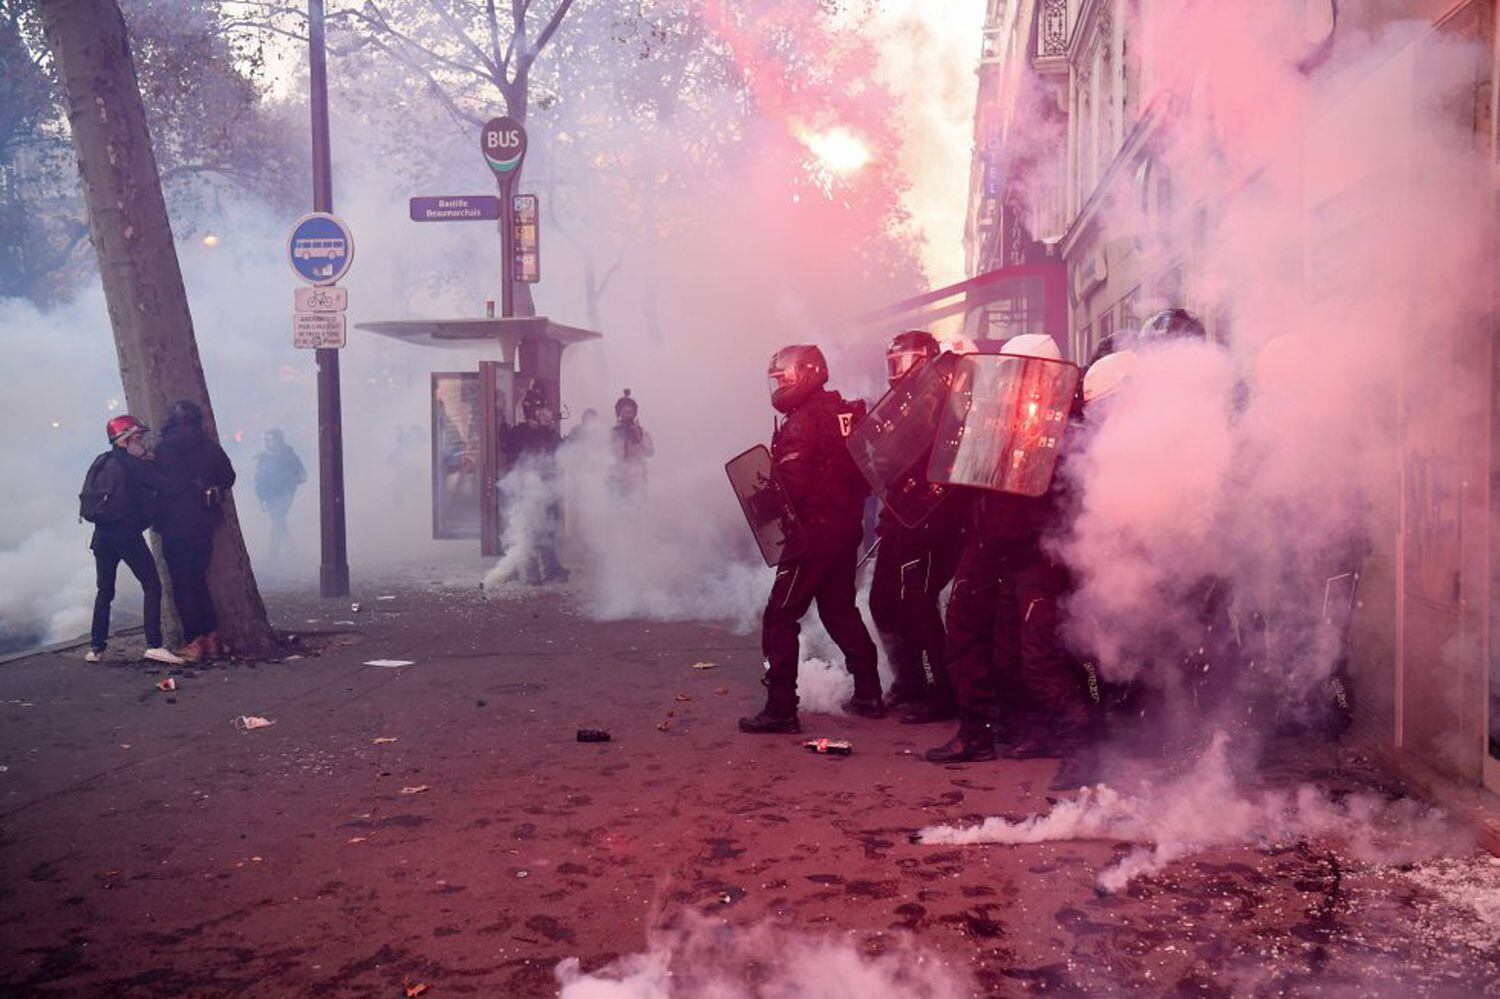 Agentes antidisturbios se enfrentan a varias personas en una calle céntrica de la capital francesa.